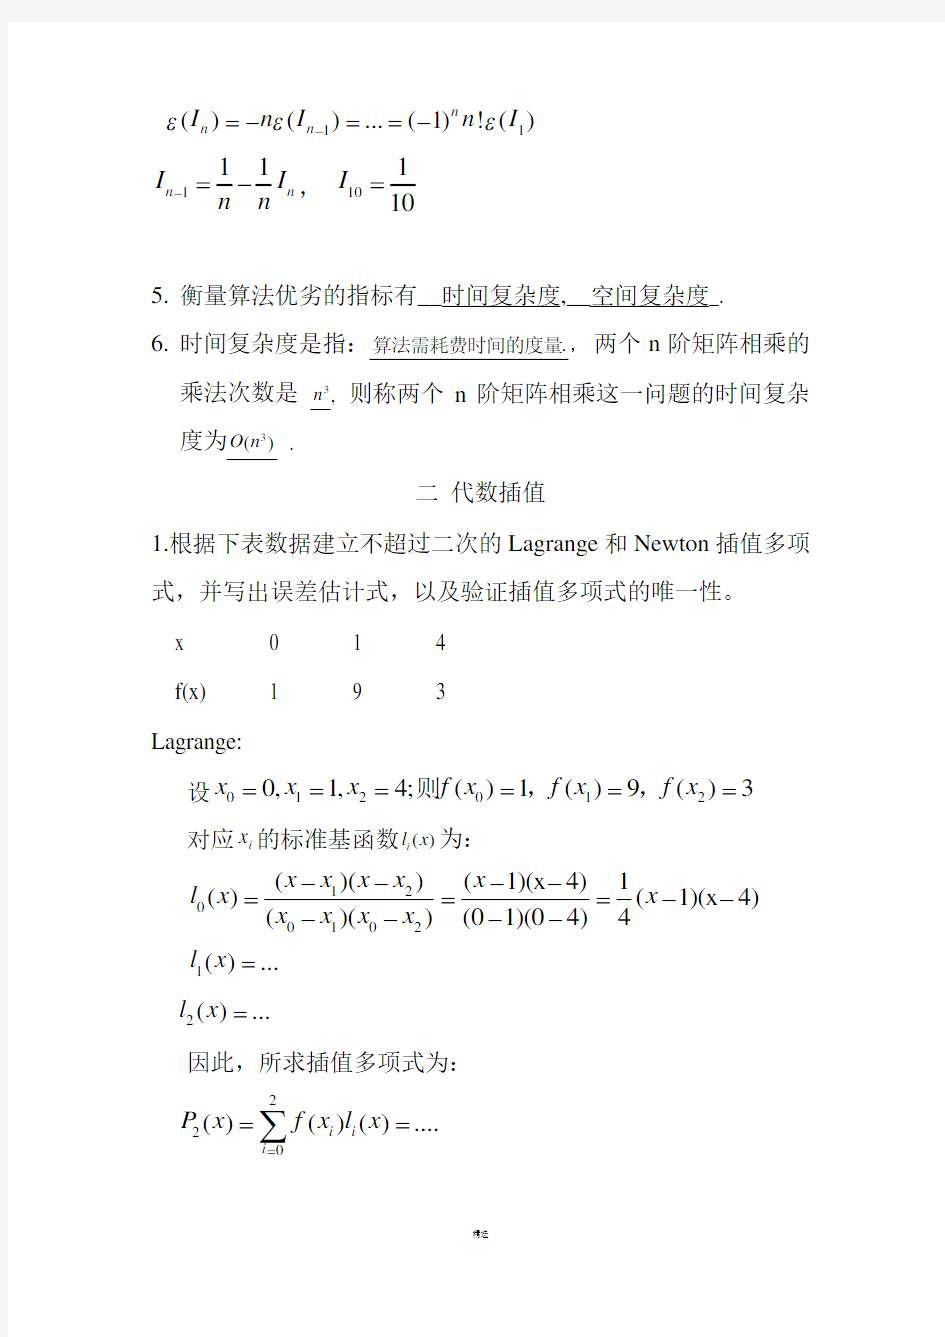 数值分析作业题(1)